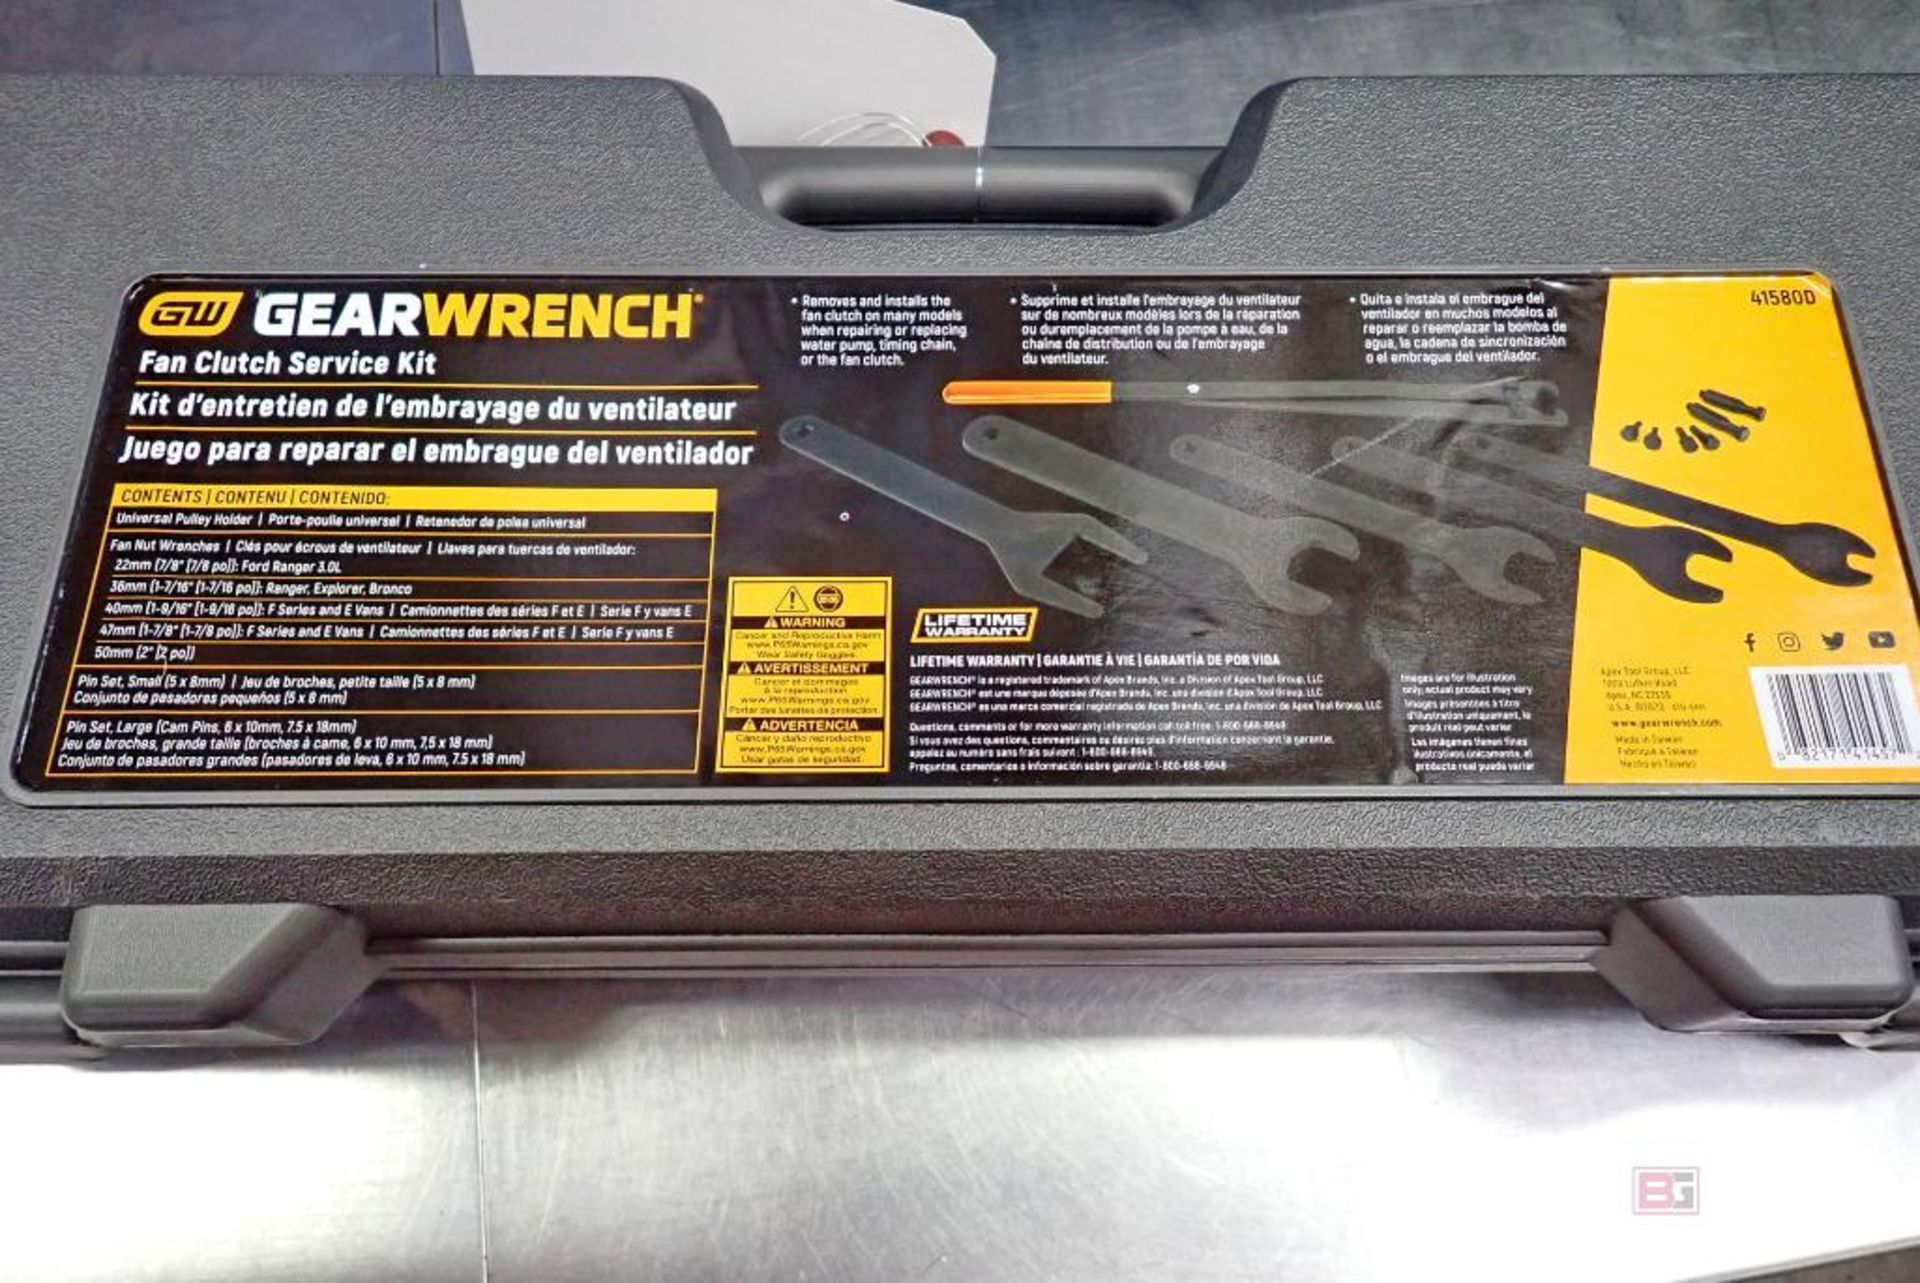 GearWrench 41580D Fan Clutch Service Kit - Image 3 of 4